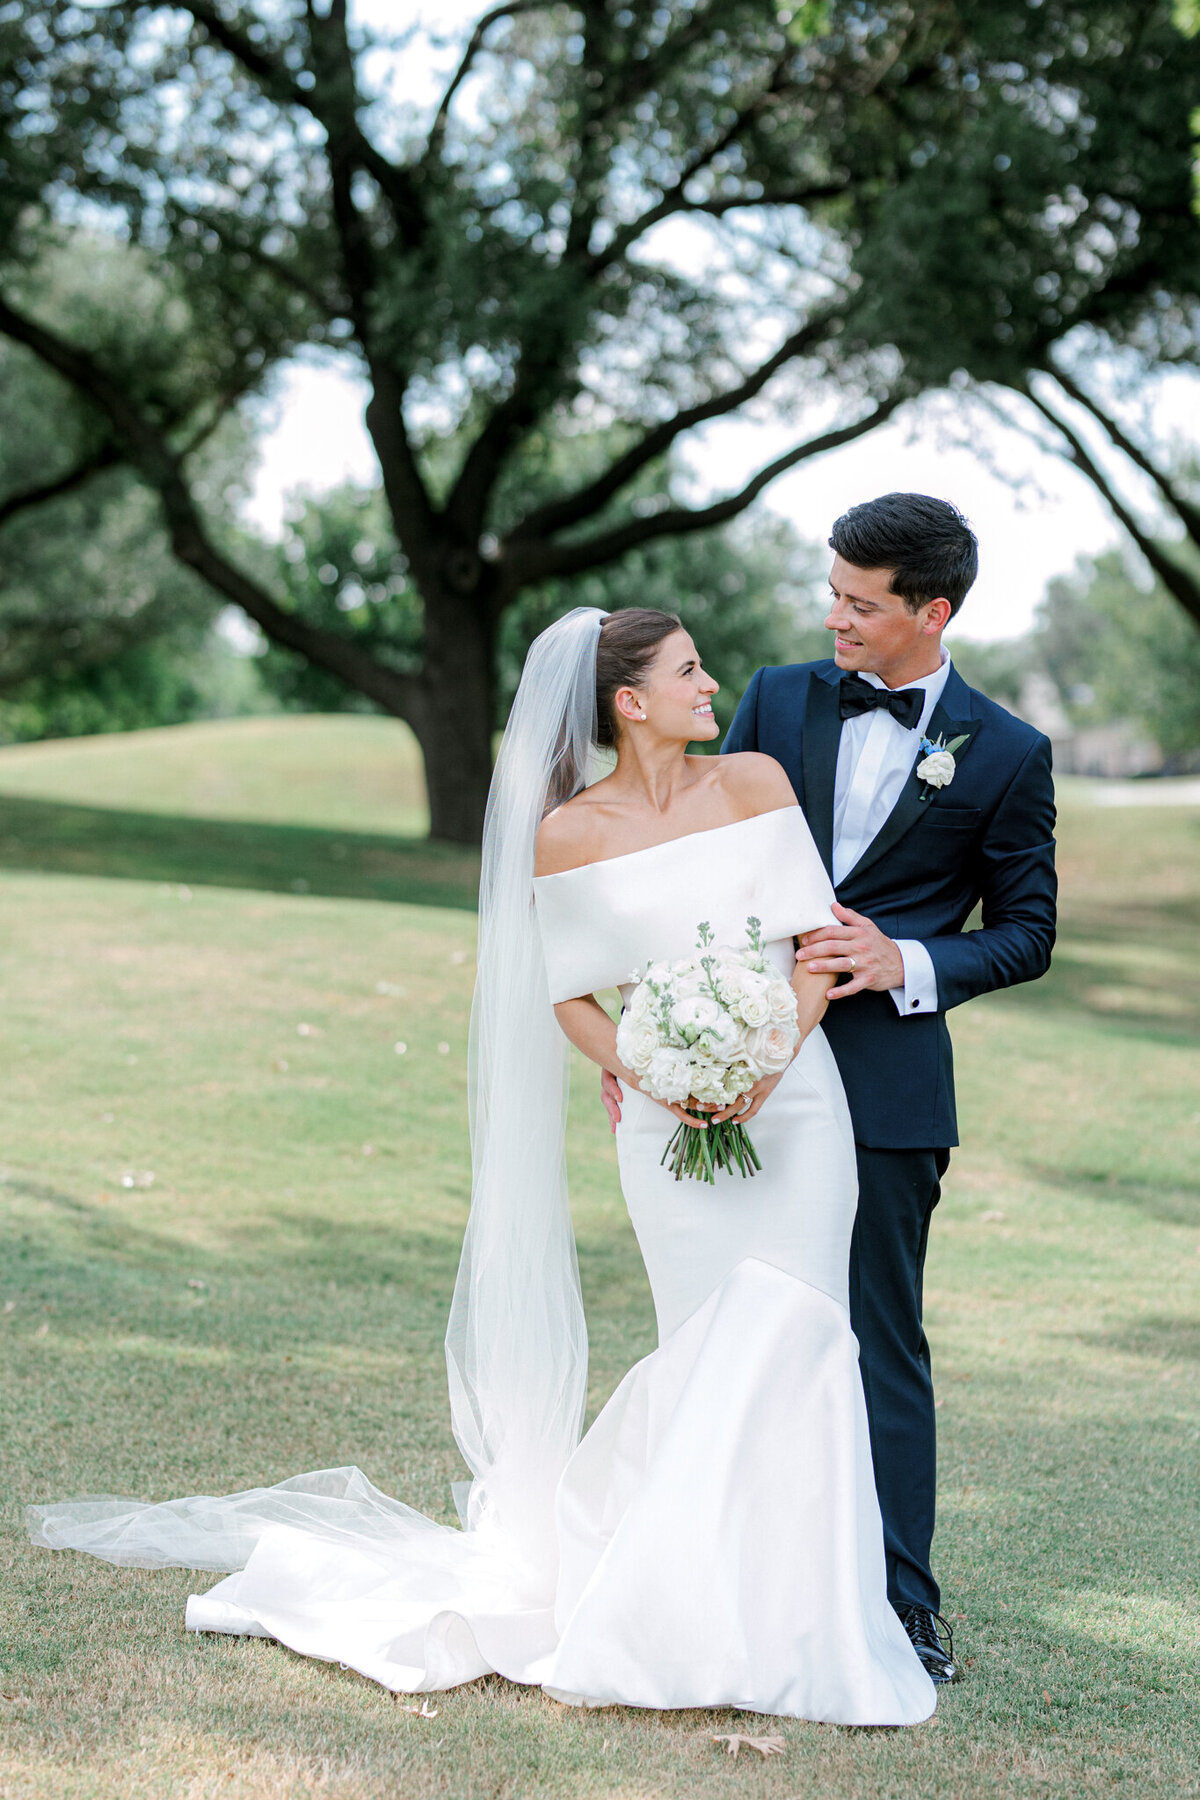 Annie & Logan's Wedding | Dallas Wedding Photographer | Sami Kathryn Photography-172